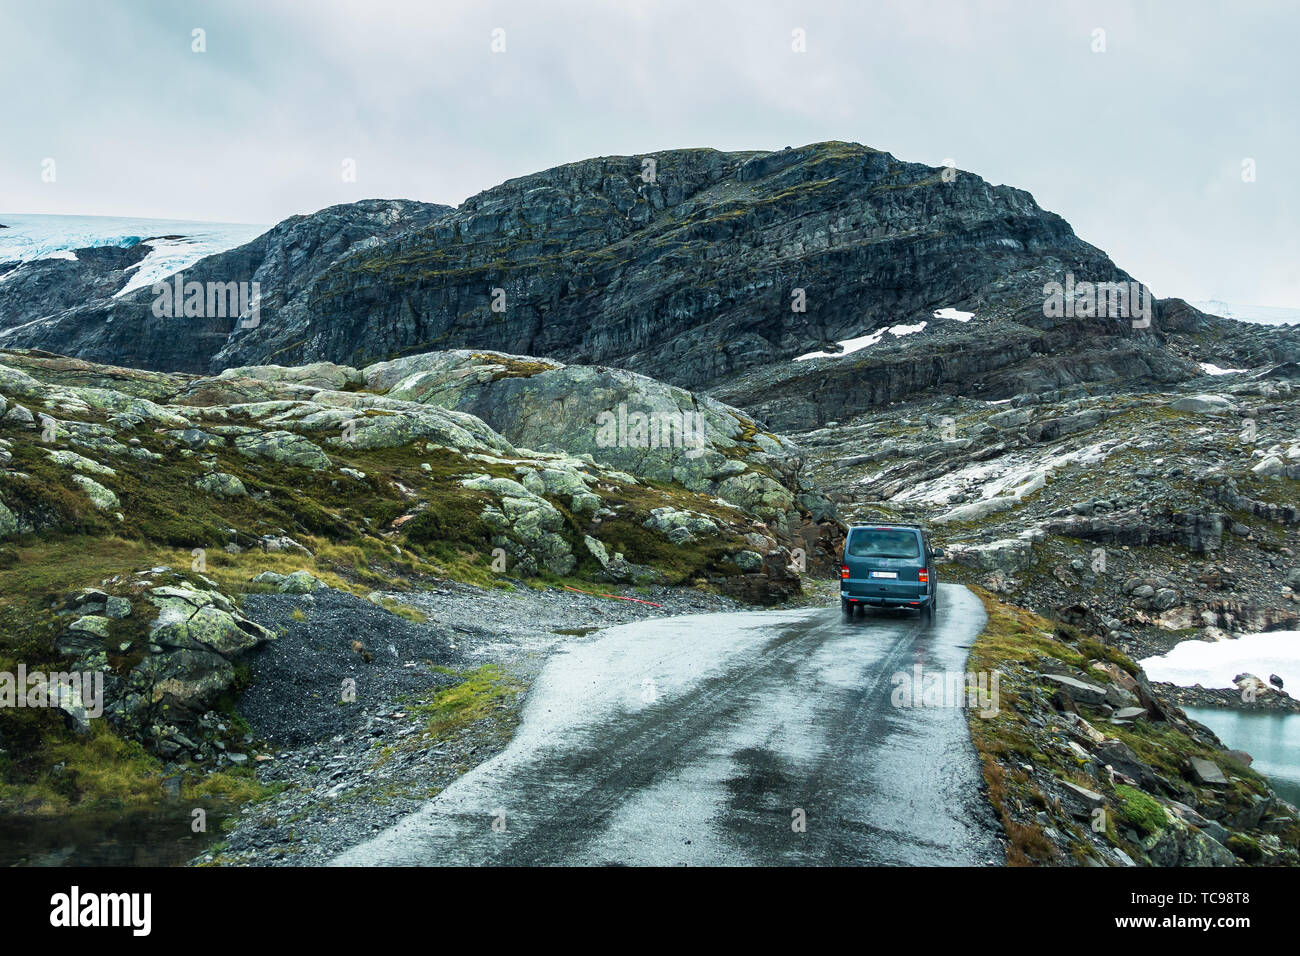 Una ripida strada salendo fino al ghiacciaio di fonna resort, circondata dal paesaggio panoramico del ghiacciaio Folgefonna, Hordaland, Norvegia Foto Stock